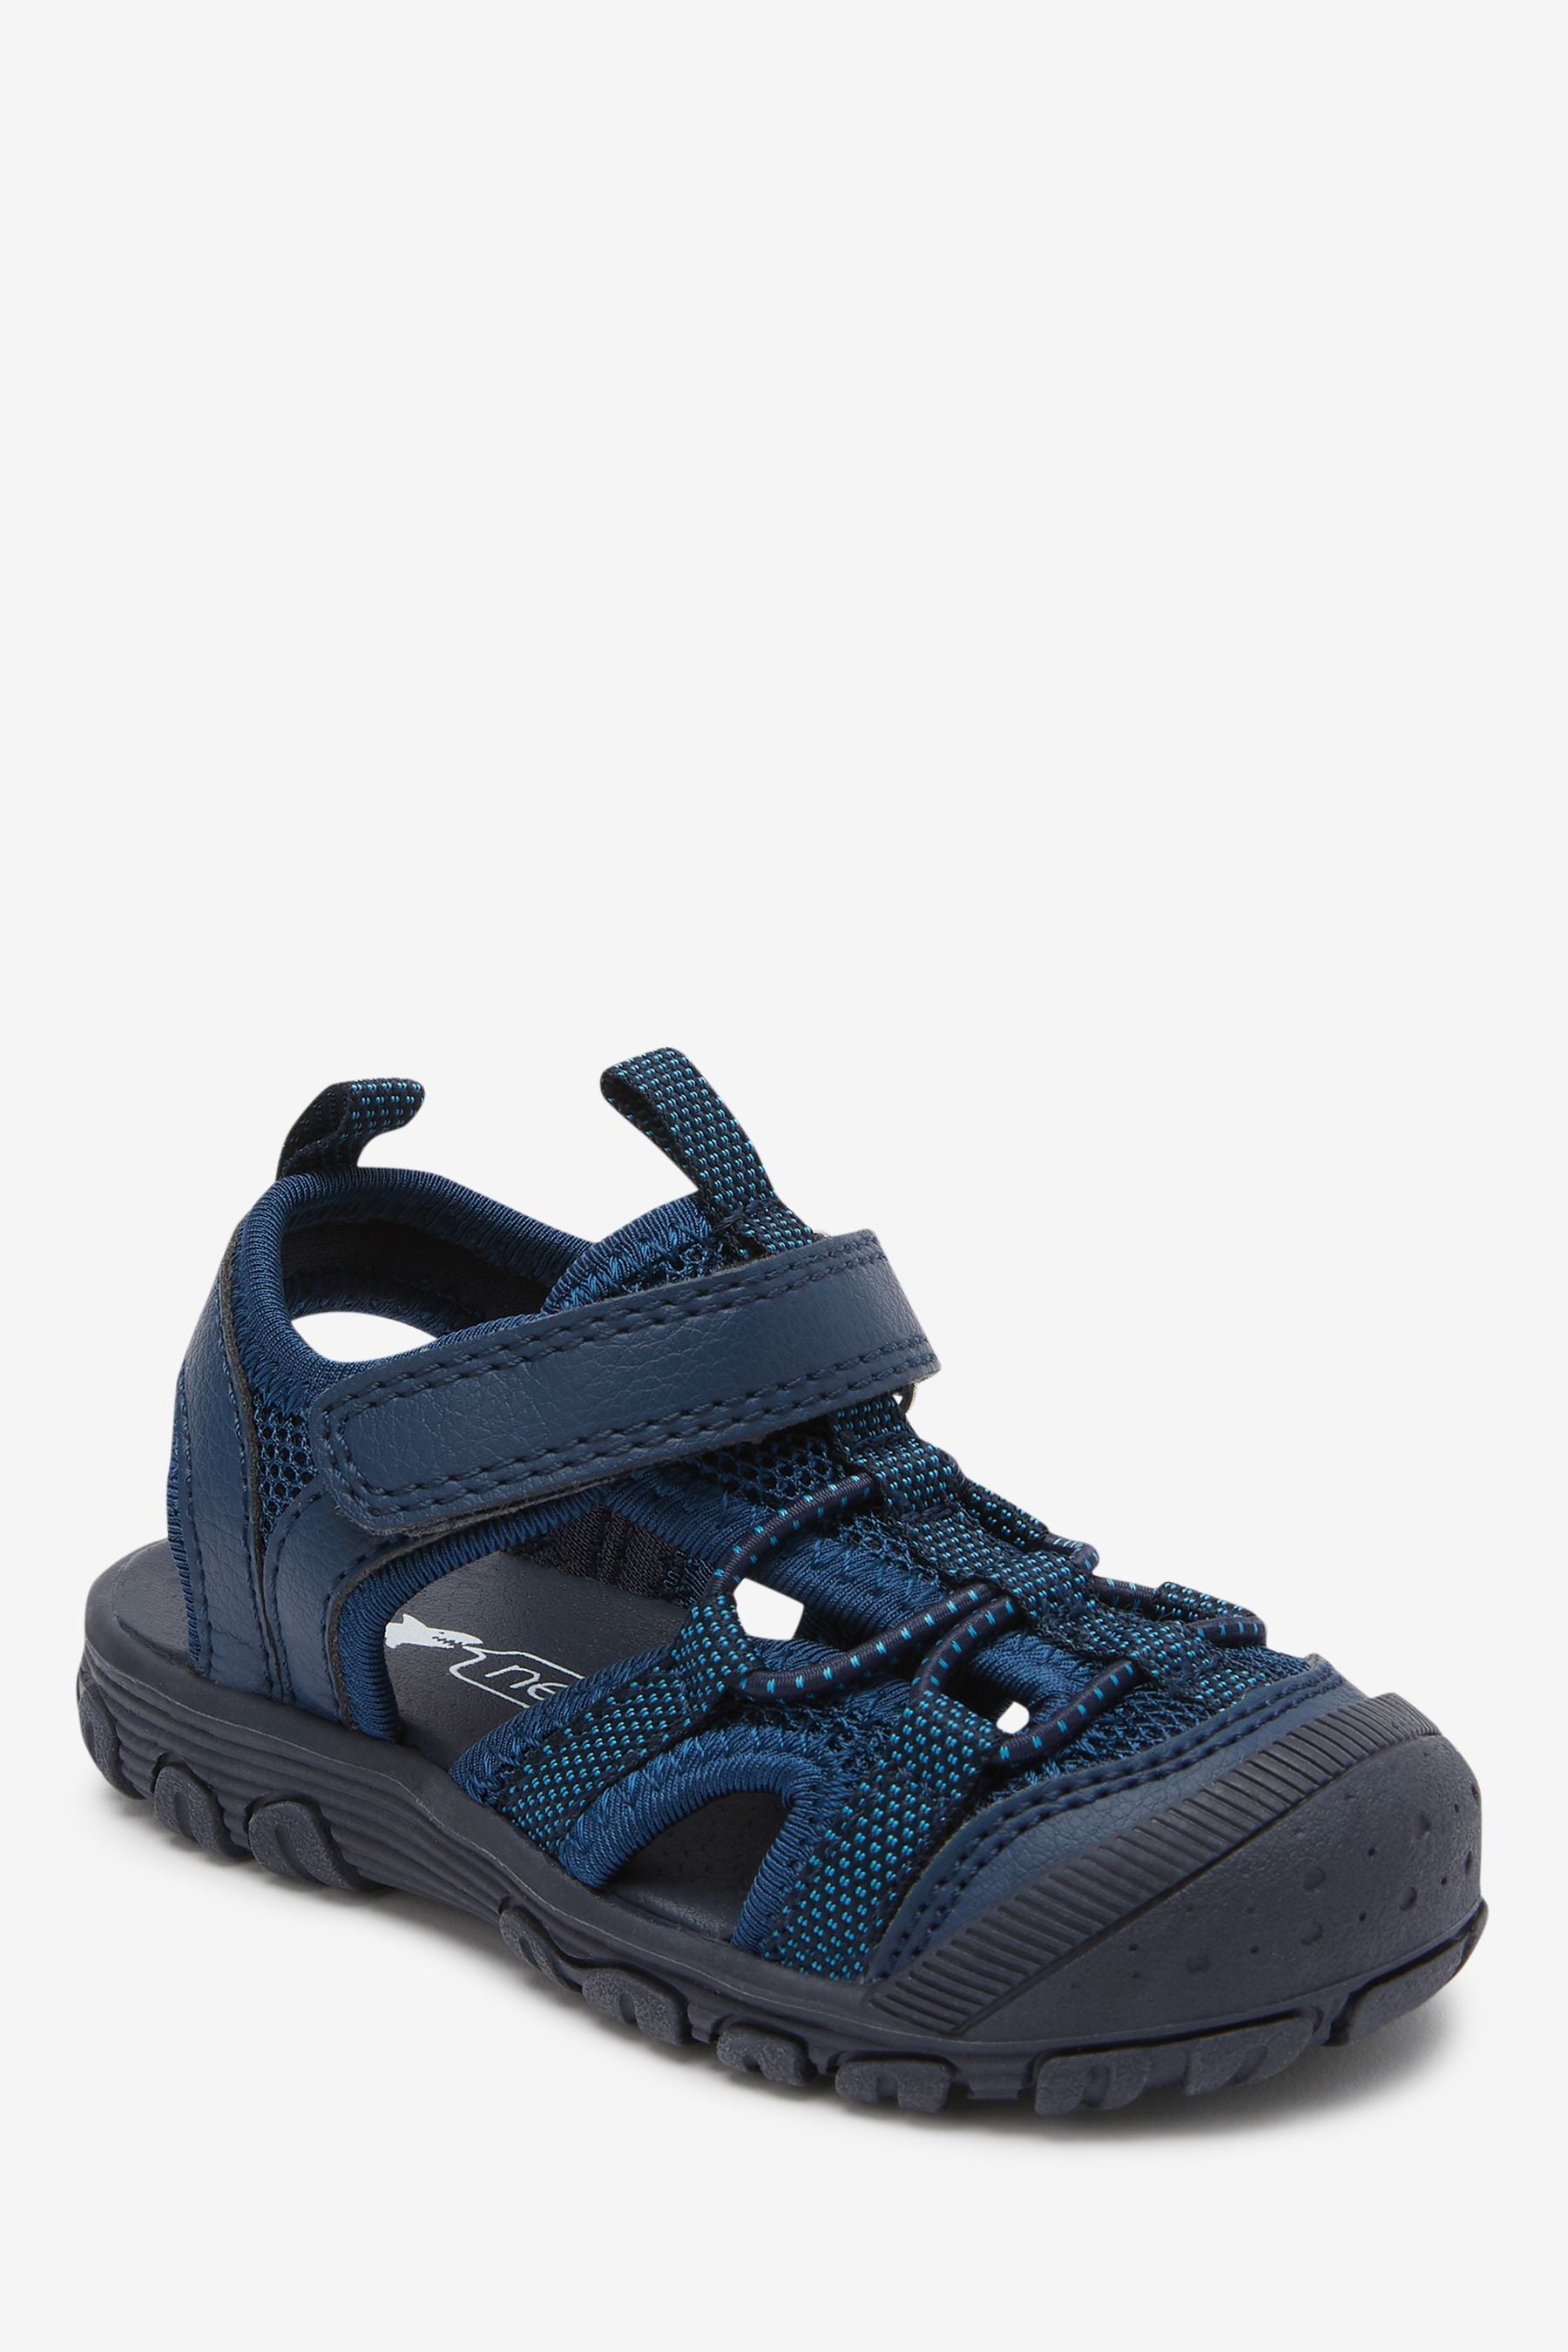 Buy Navy Bump Toe Trekker Sandals from the Next UK online shop